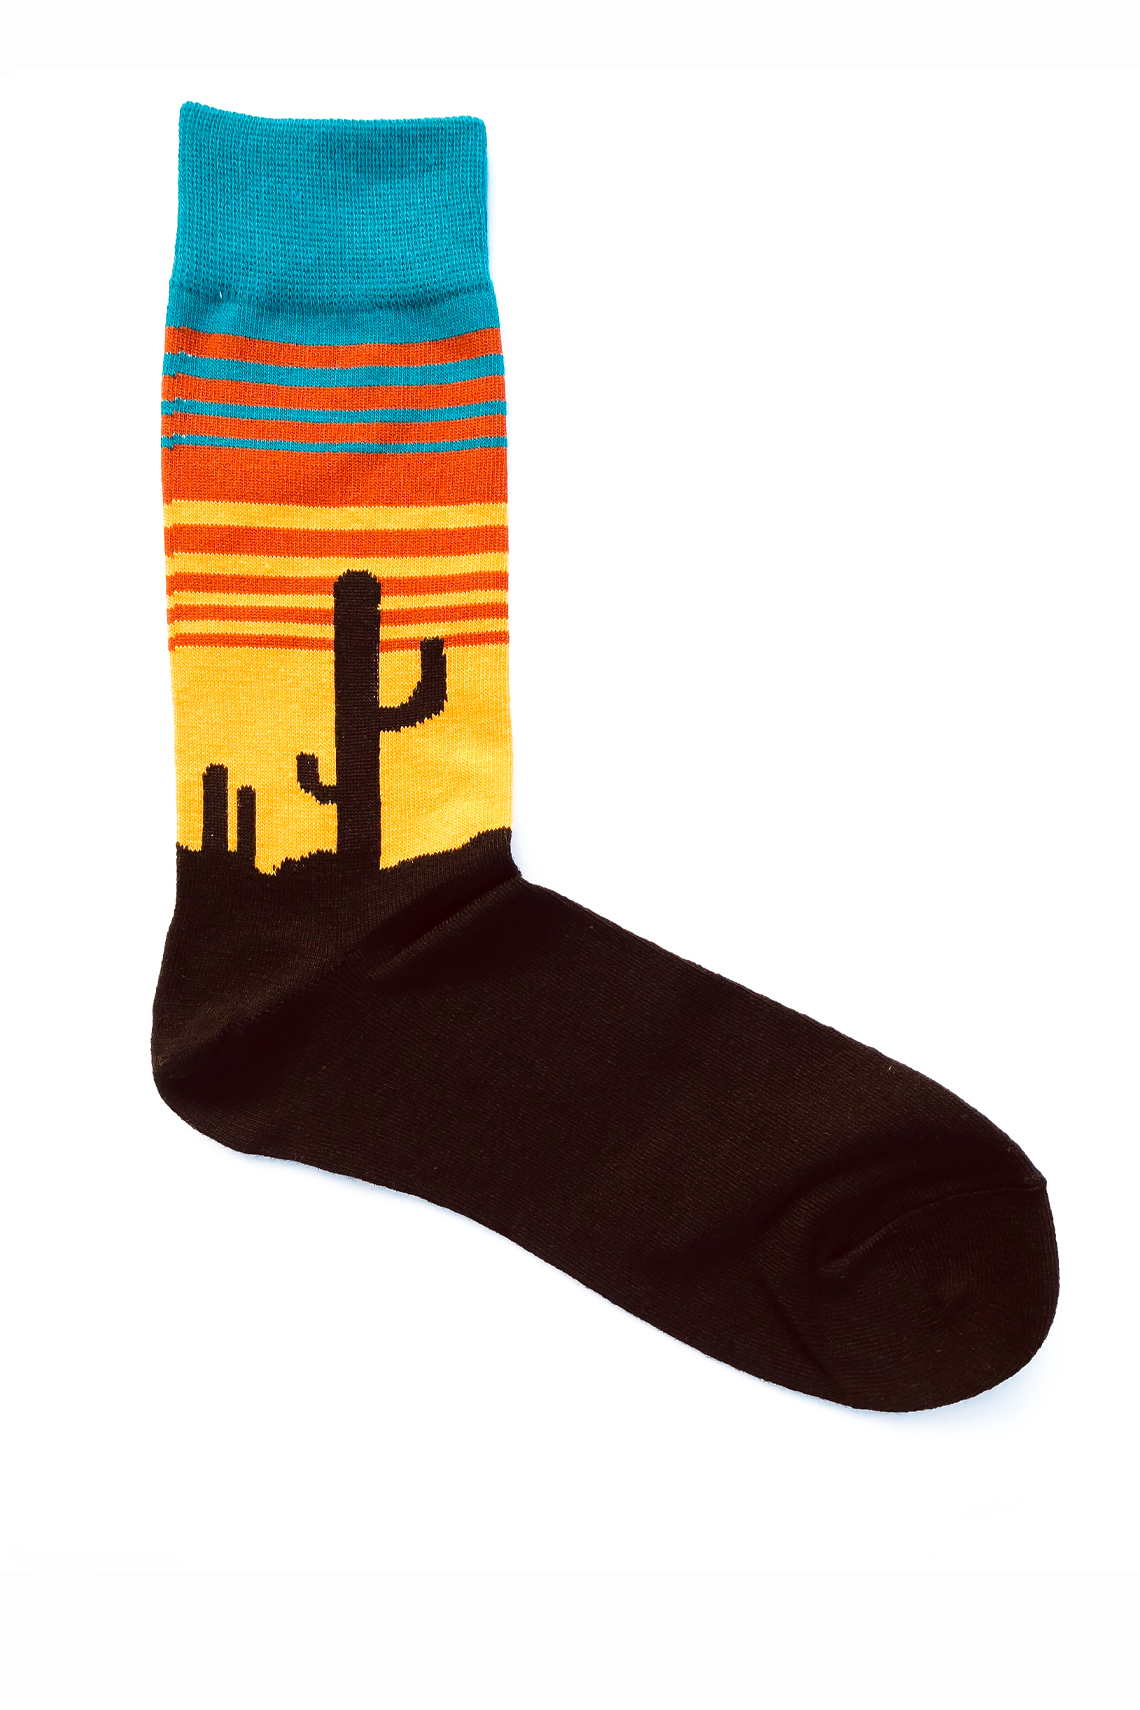 Chaussettes fantaisie noir, jaune, orange et turquoise. Motif coucher de soleil, et cactus en contre-jour. Taille unique.